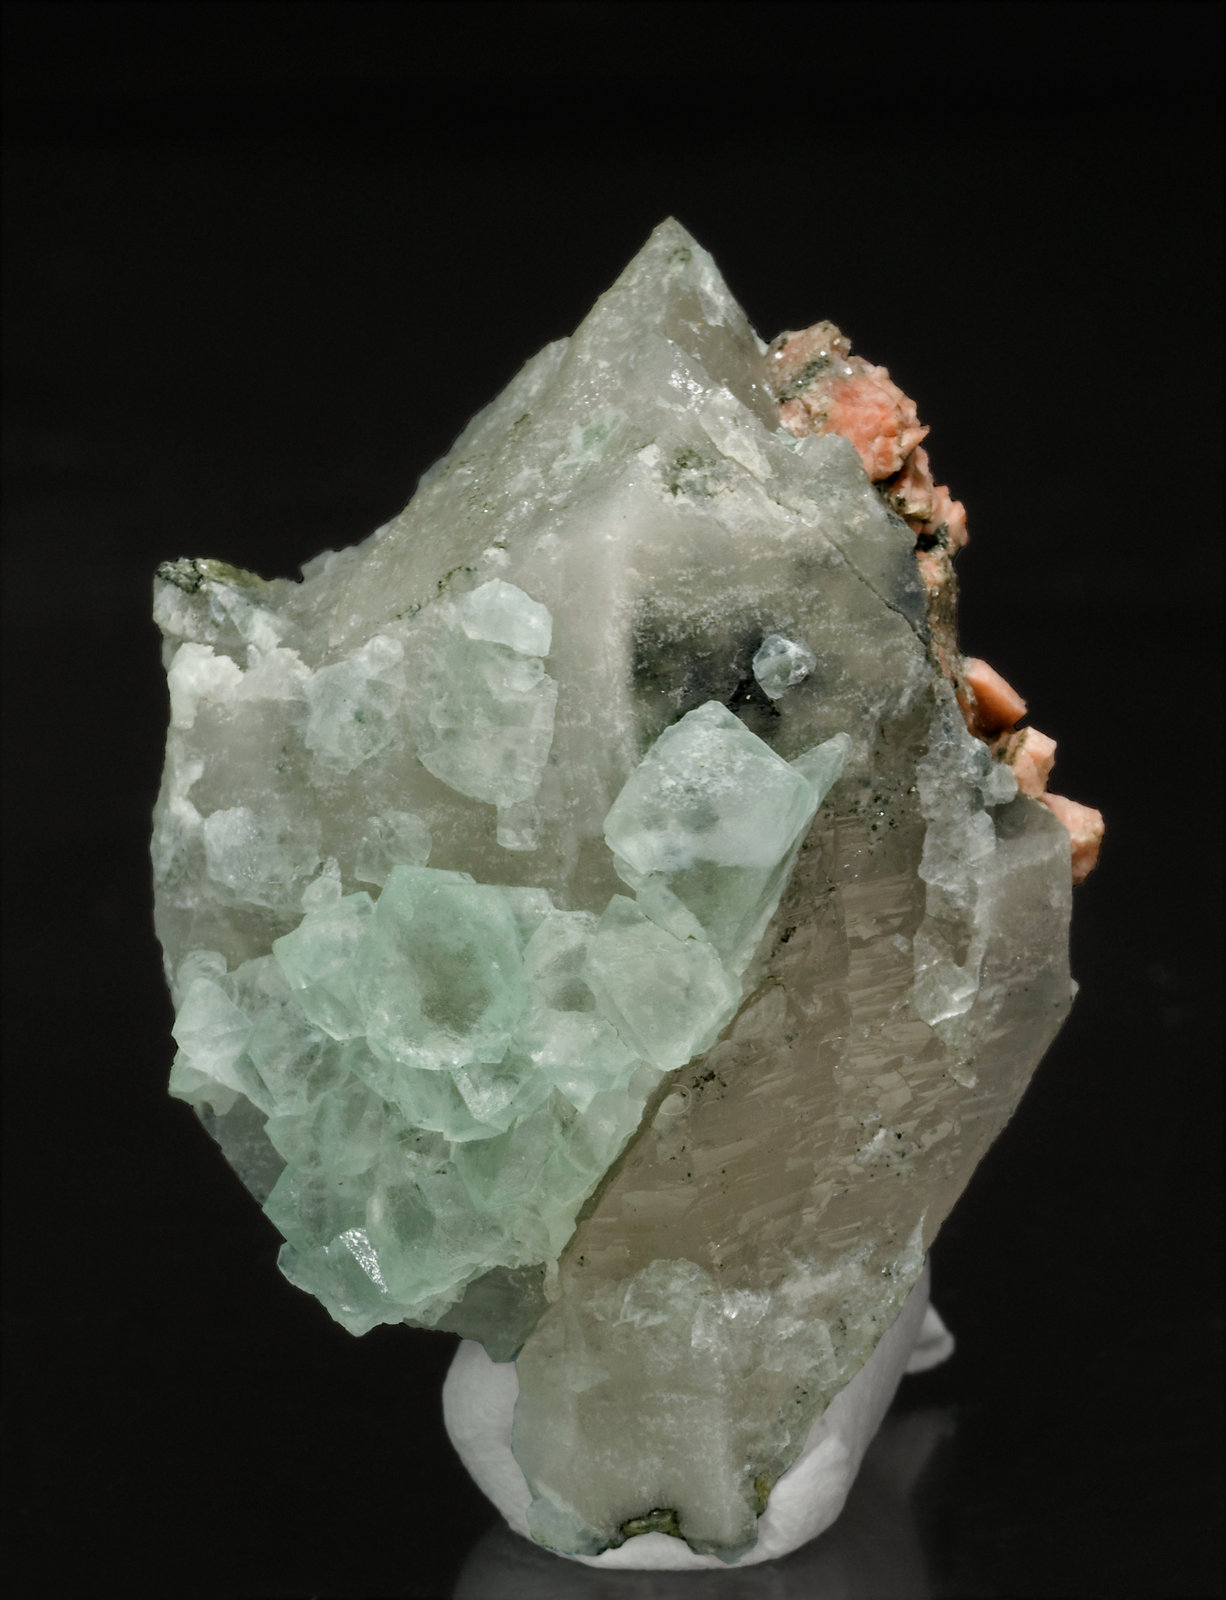 specimens/s_imagesT3/Fluorite-MH6T3s.jpg